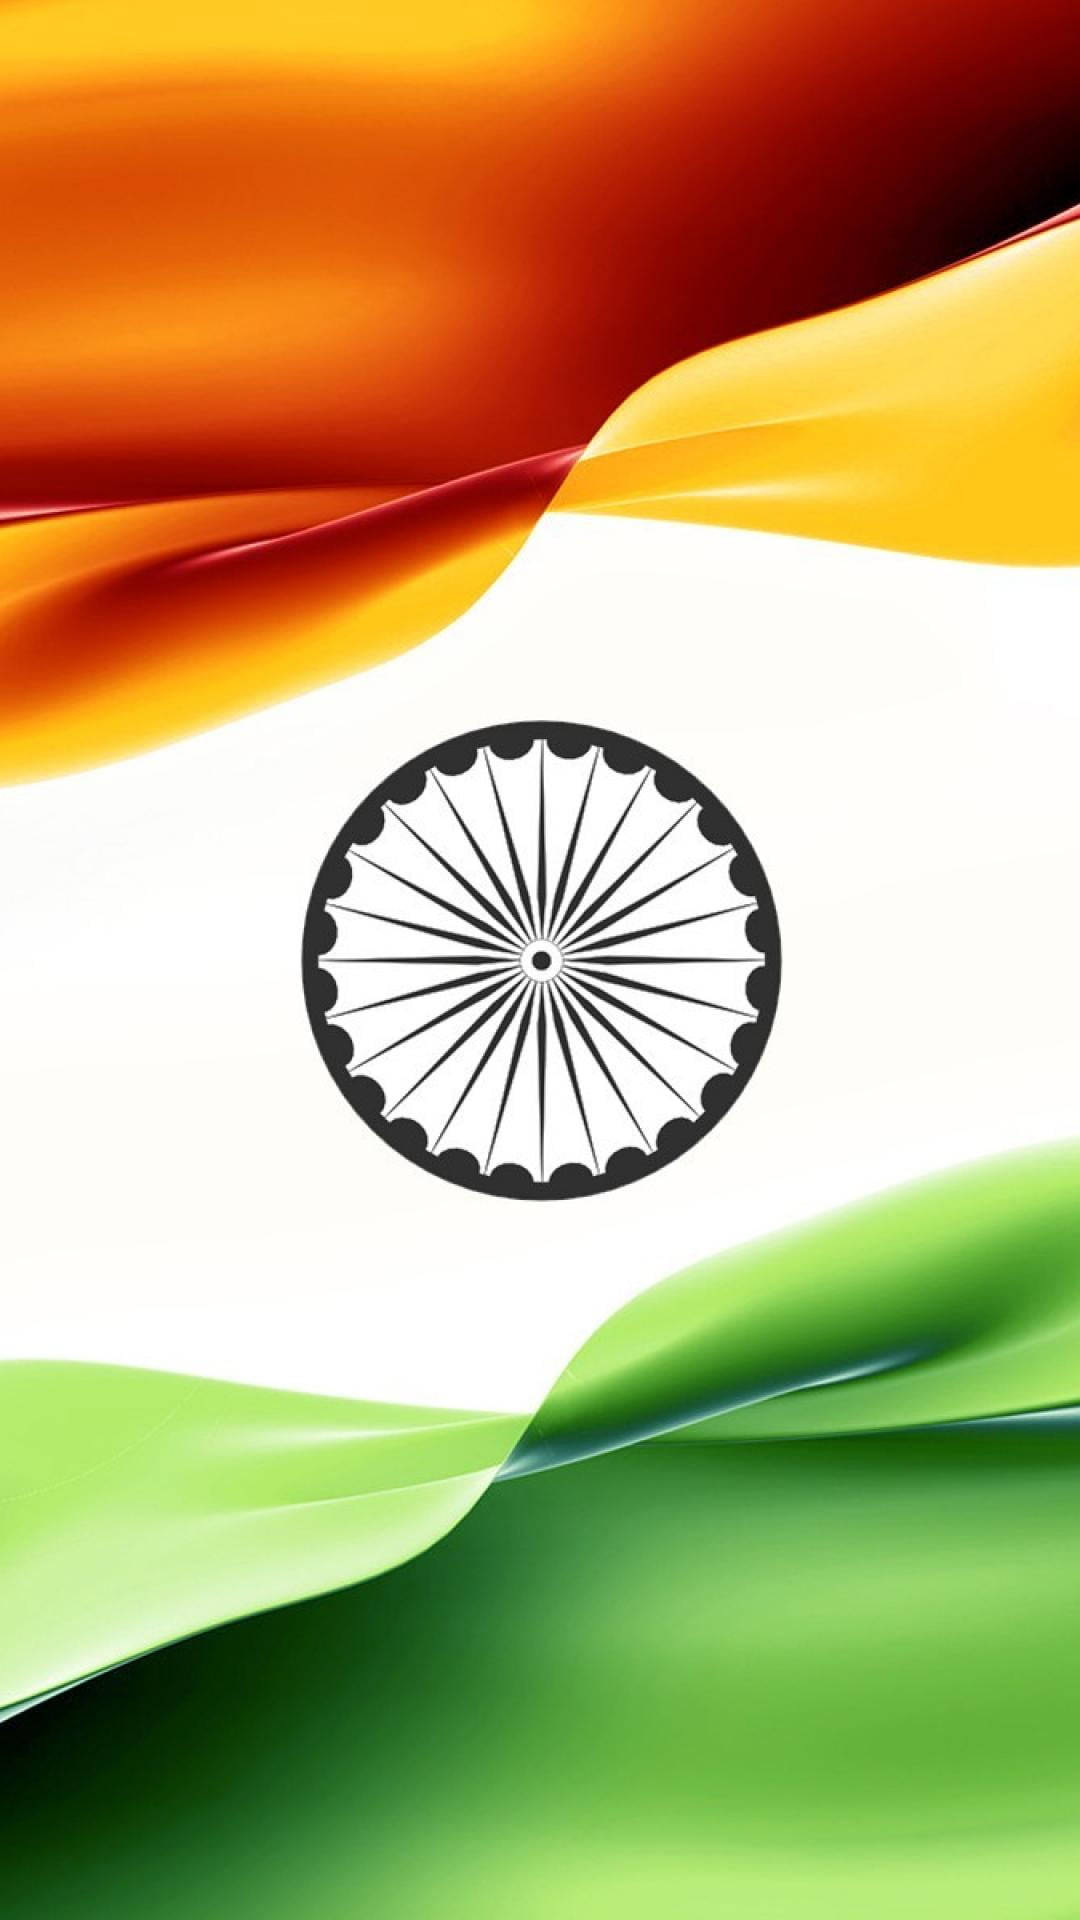 Rippled Indian Flag Mobile Wallpaper